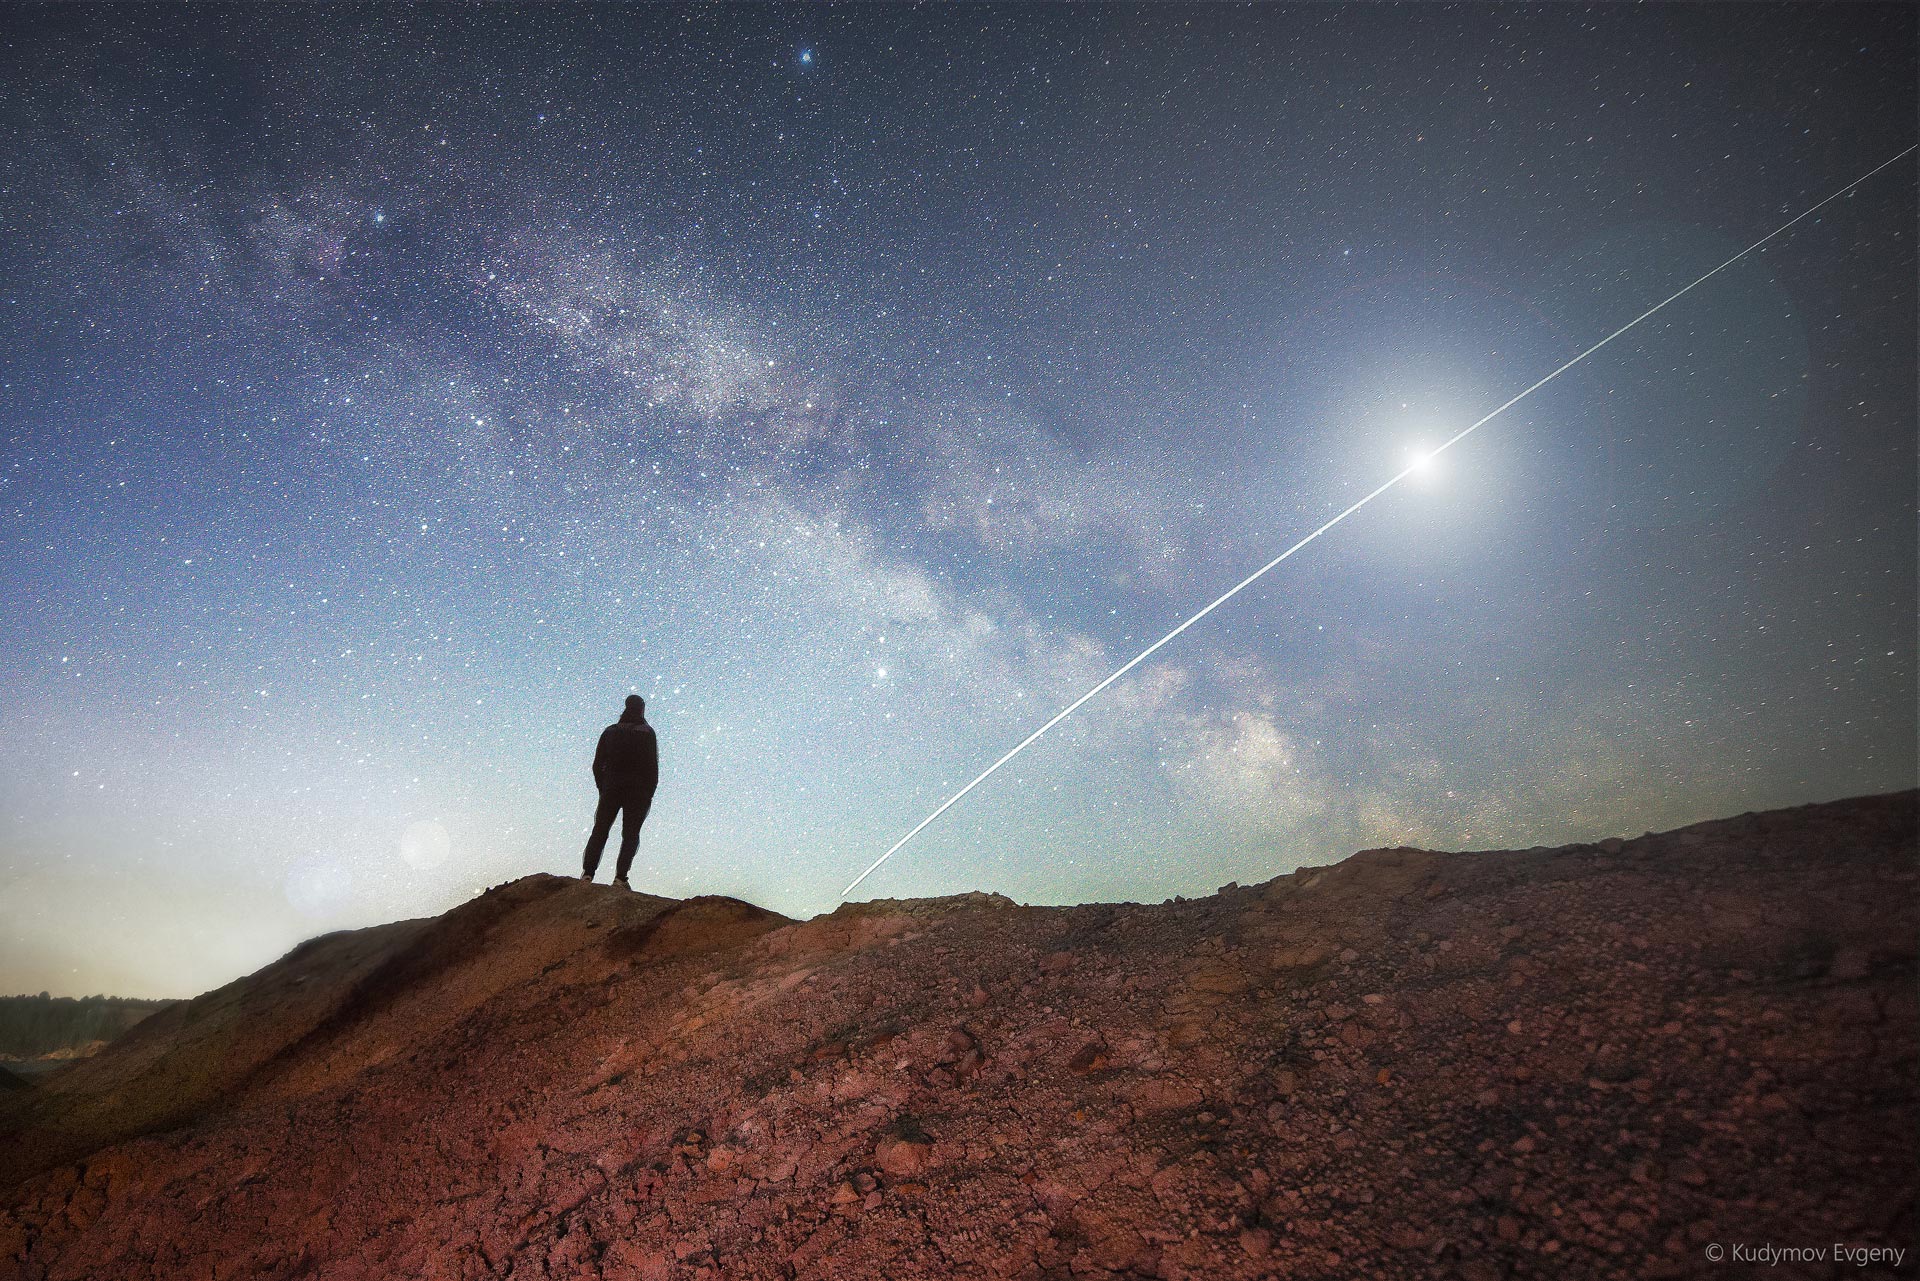 Нереальная красота: фотограф сделал снимки звездного неба на Уральском Марсе